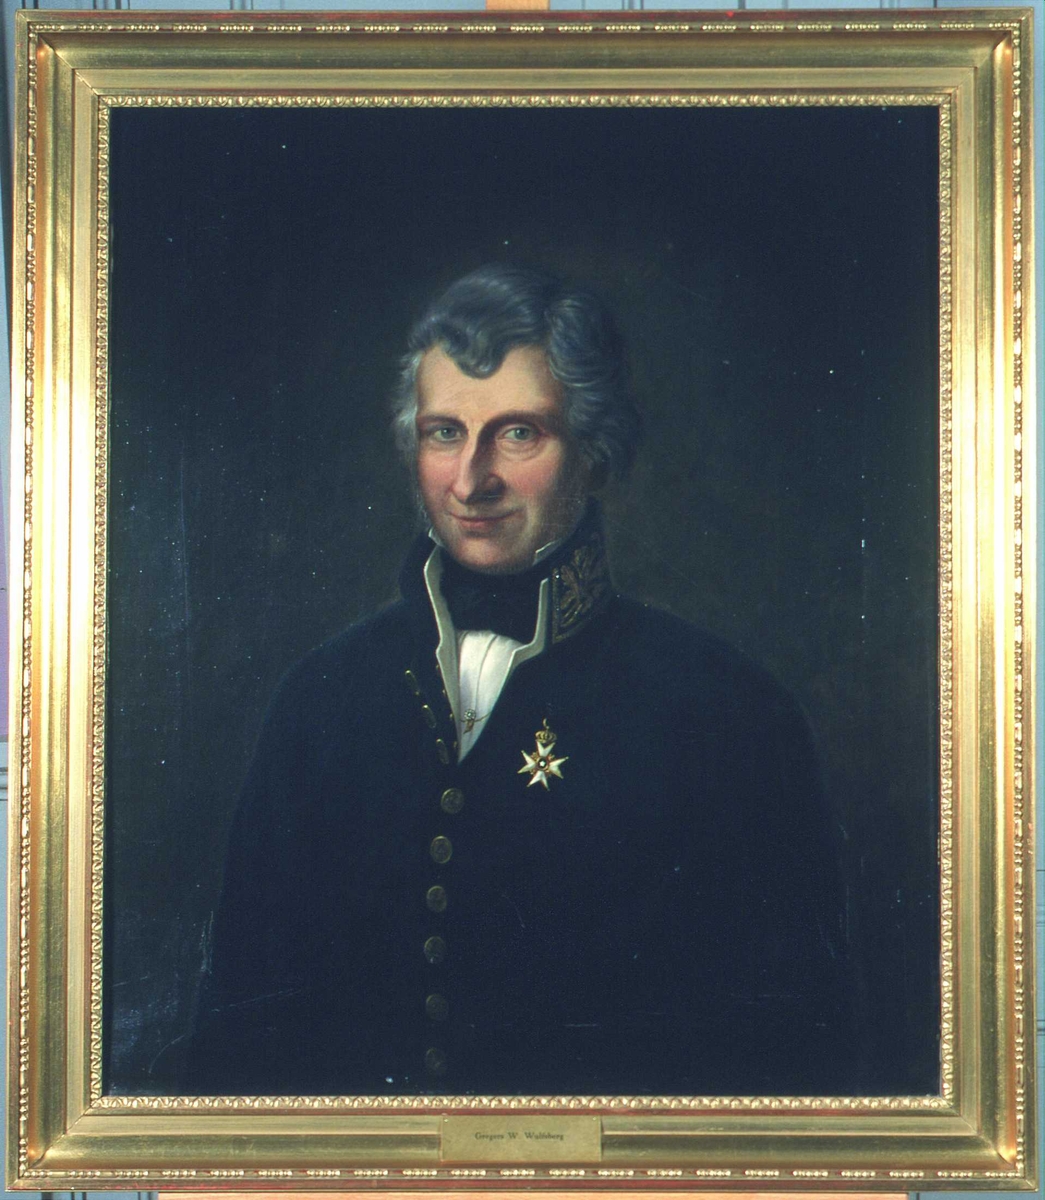 Portrett av Wulfsberg. Grått hår, mørk uniform. Amtmannsuniform etter 1815. Orden festet på brystet.